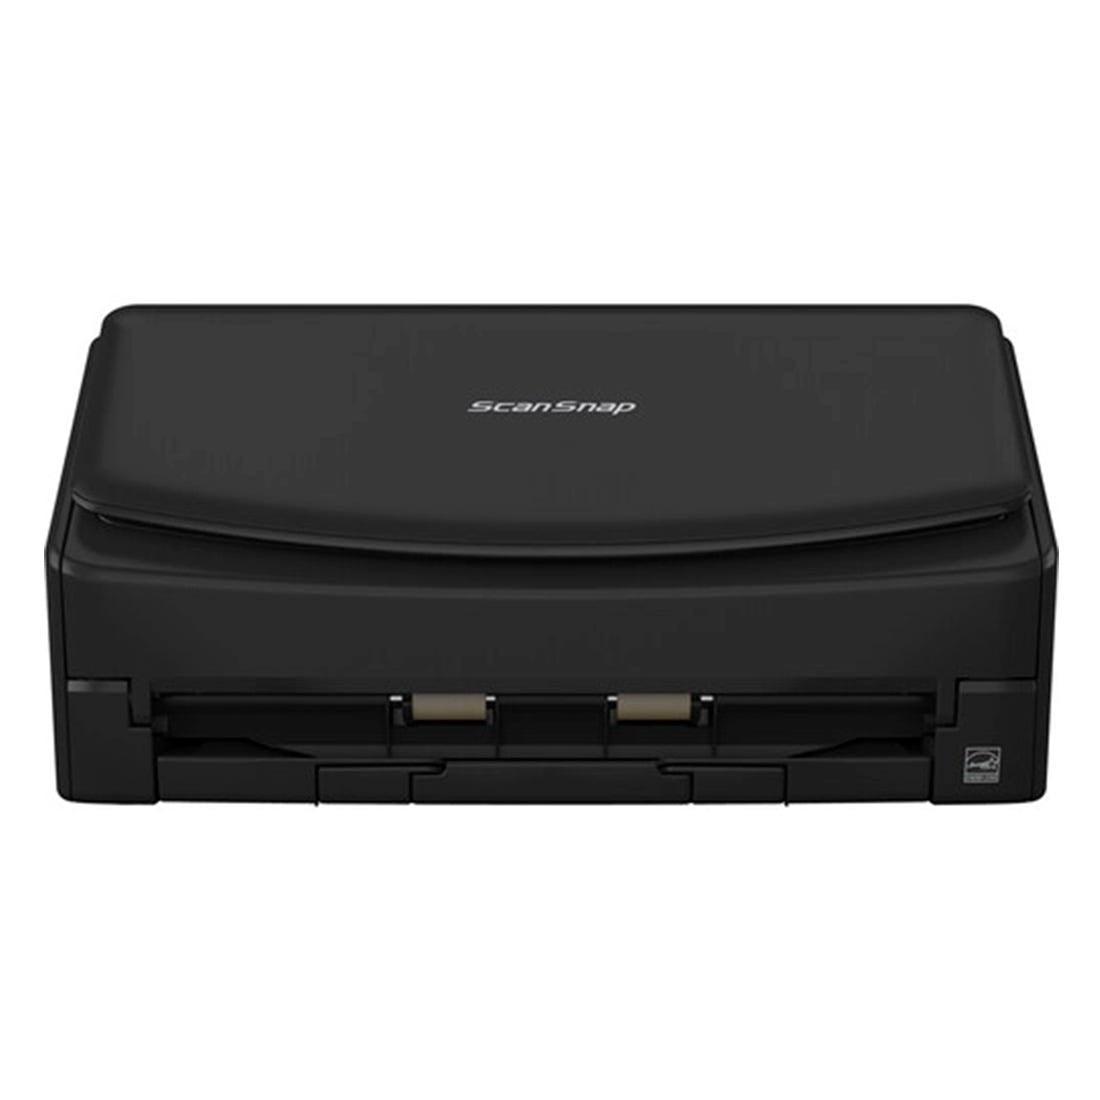 Scanner Fujitsu iX1400 Preto 40ppm A4 CG01000-300001 - Mega Market